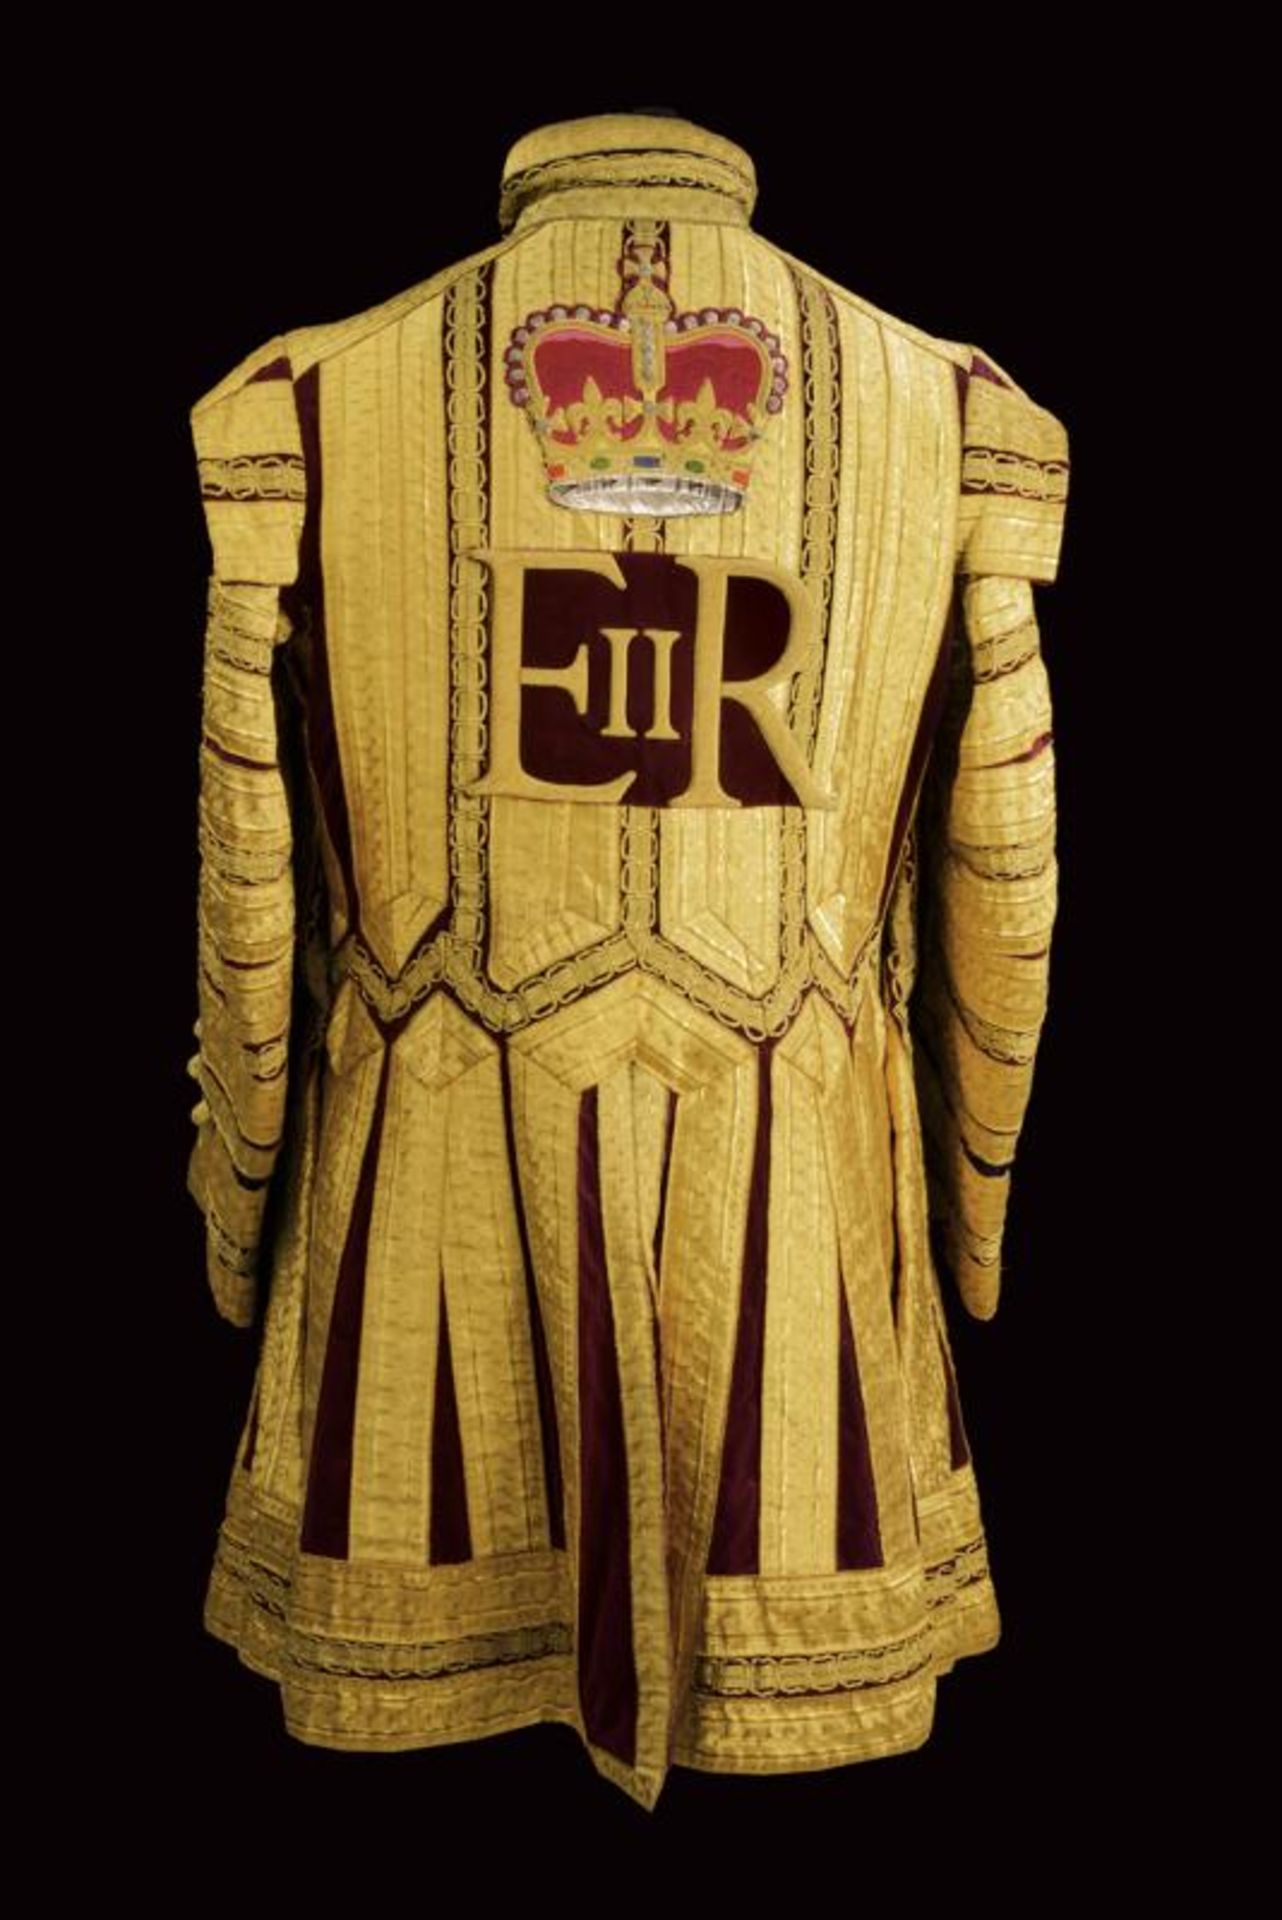 A drum major's uniform, epoch Queen Elisabeth II - Bild 4 aus 4